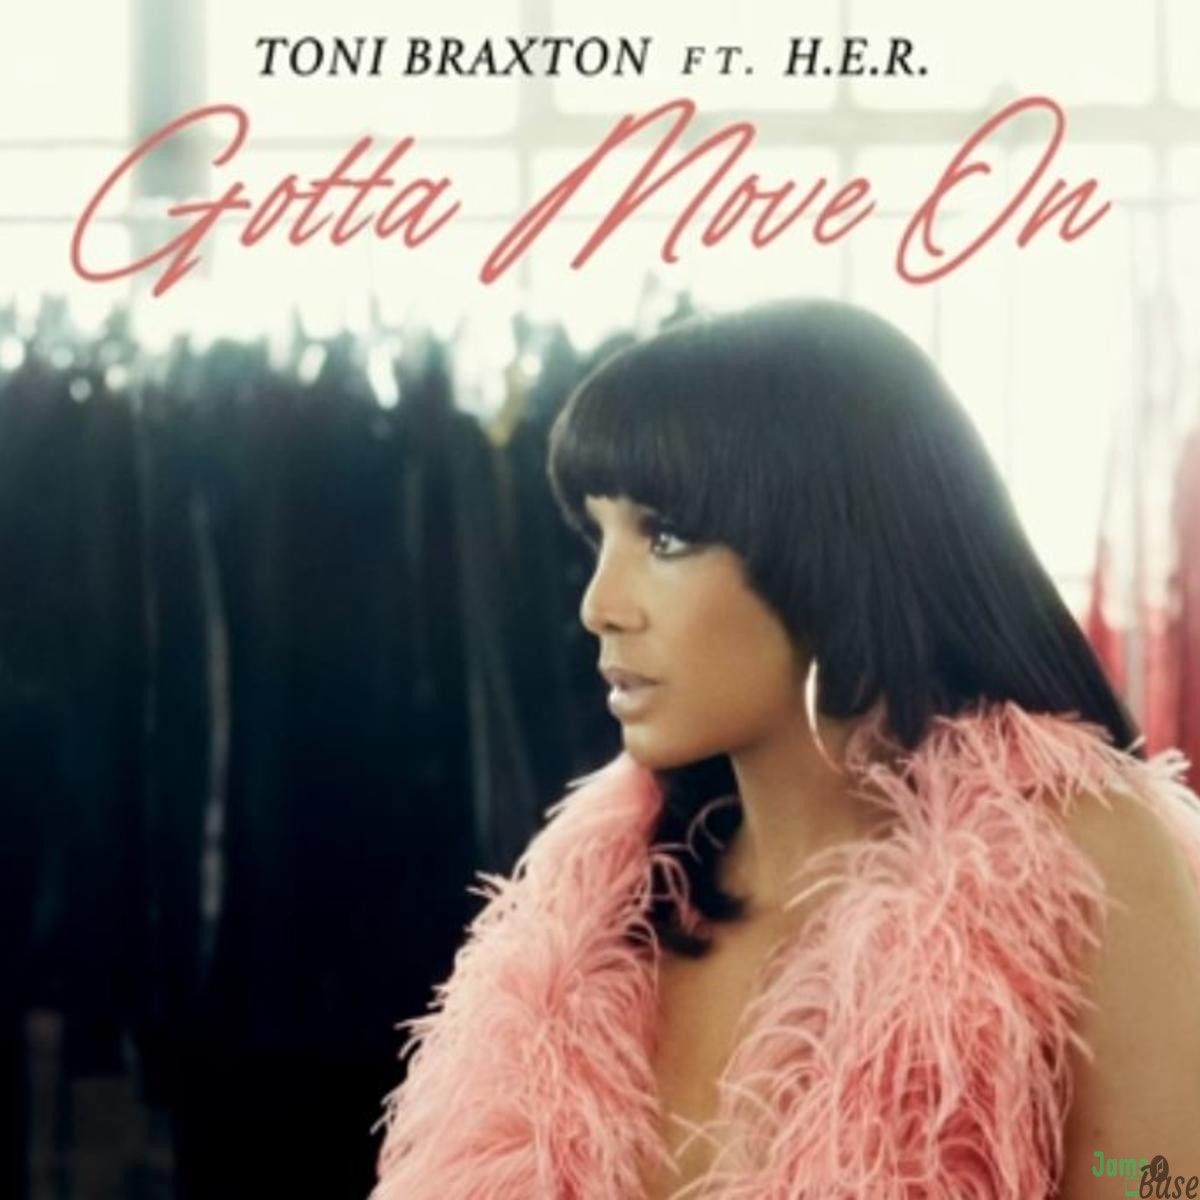 Toni Braxton Taps H.E.R. For "Gotta Move On"